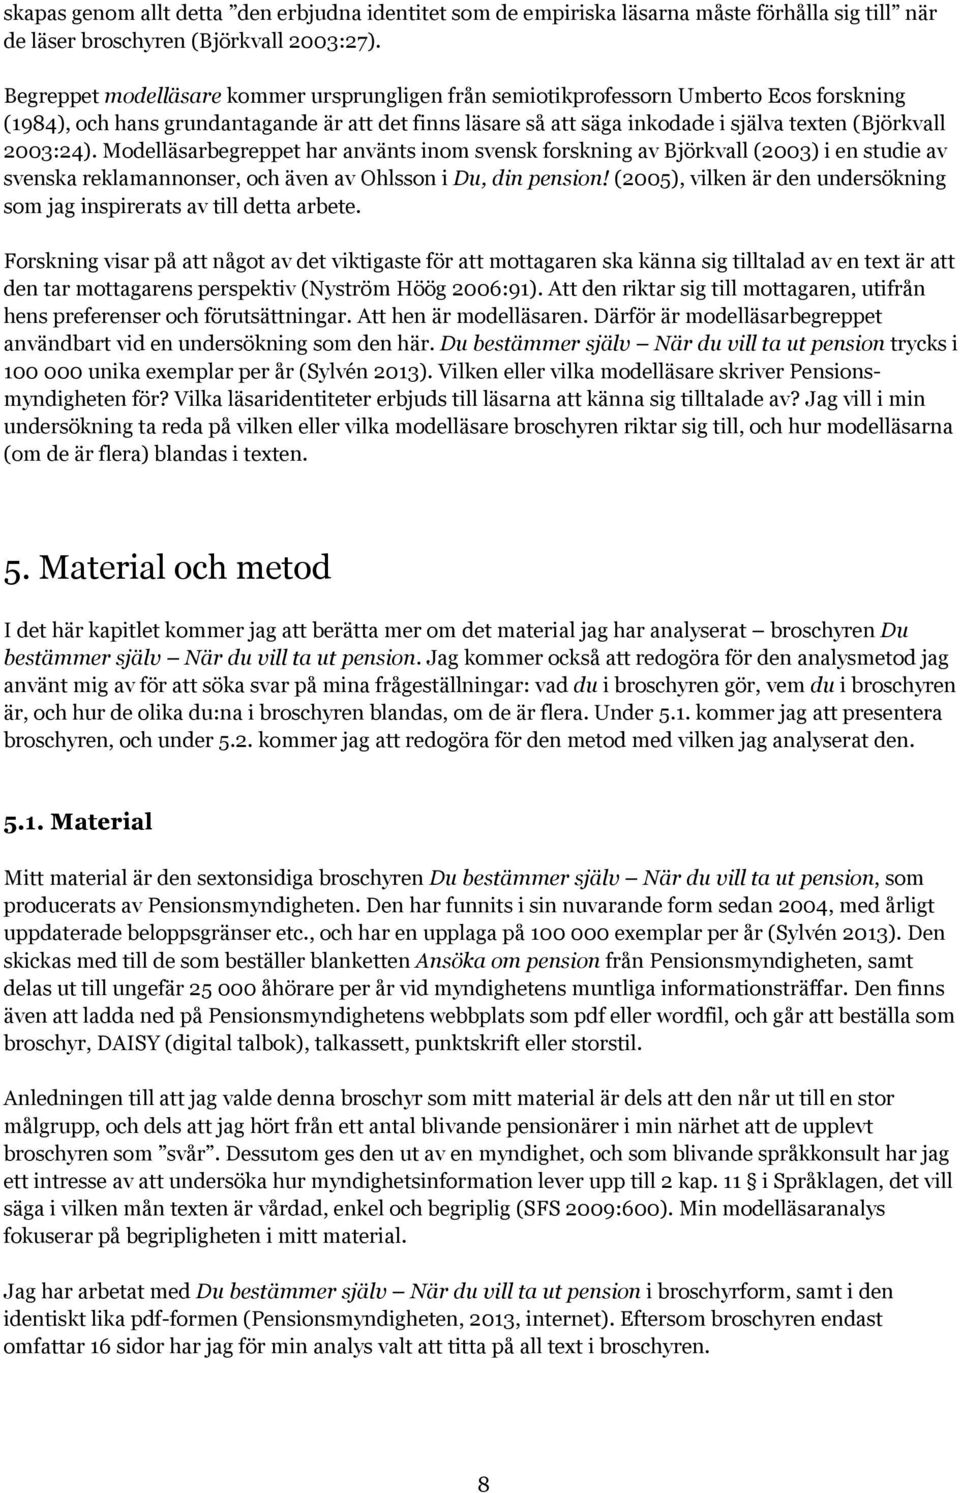 2003:24). Modelläsarbegreppet har använts inom svensk forskning av Björkvall (2003) i en studie av svenska reklamannonser, och även av Ohlsson i Du, din pension!